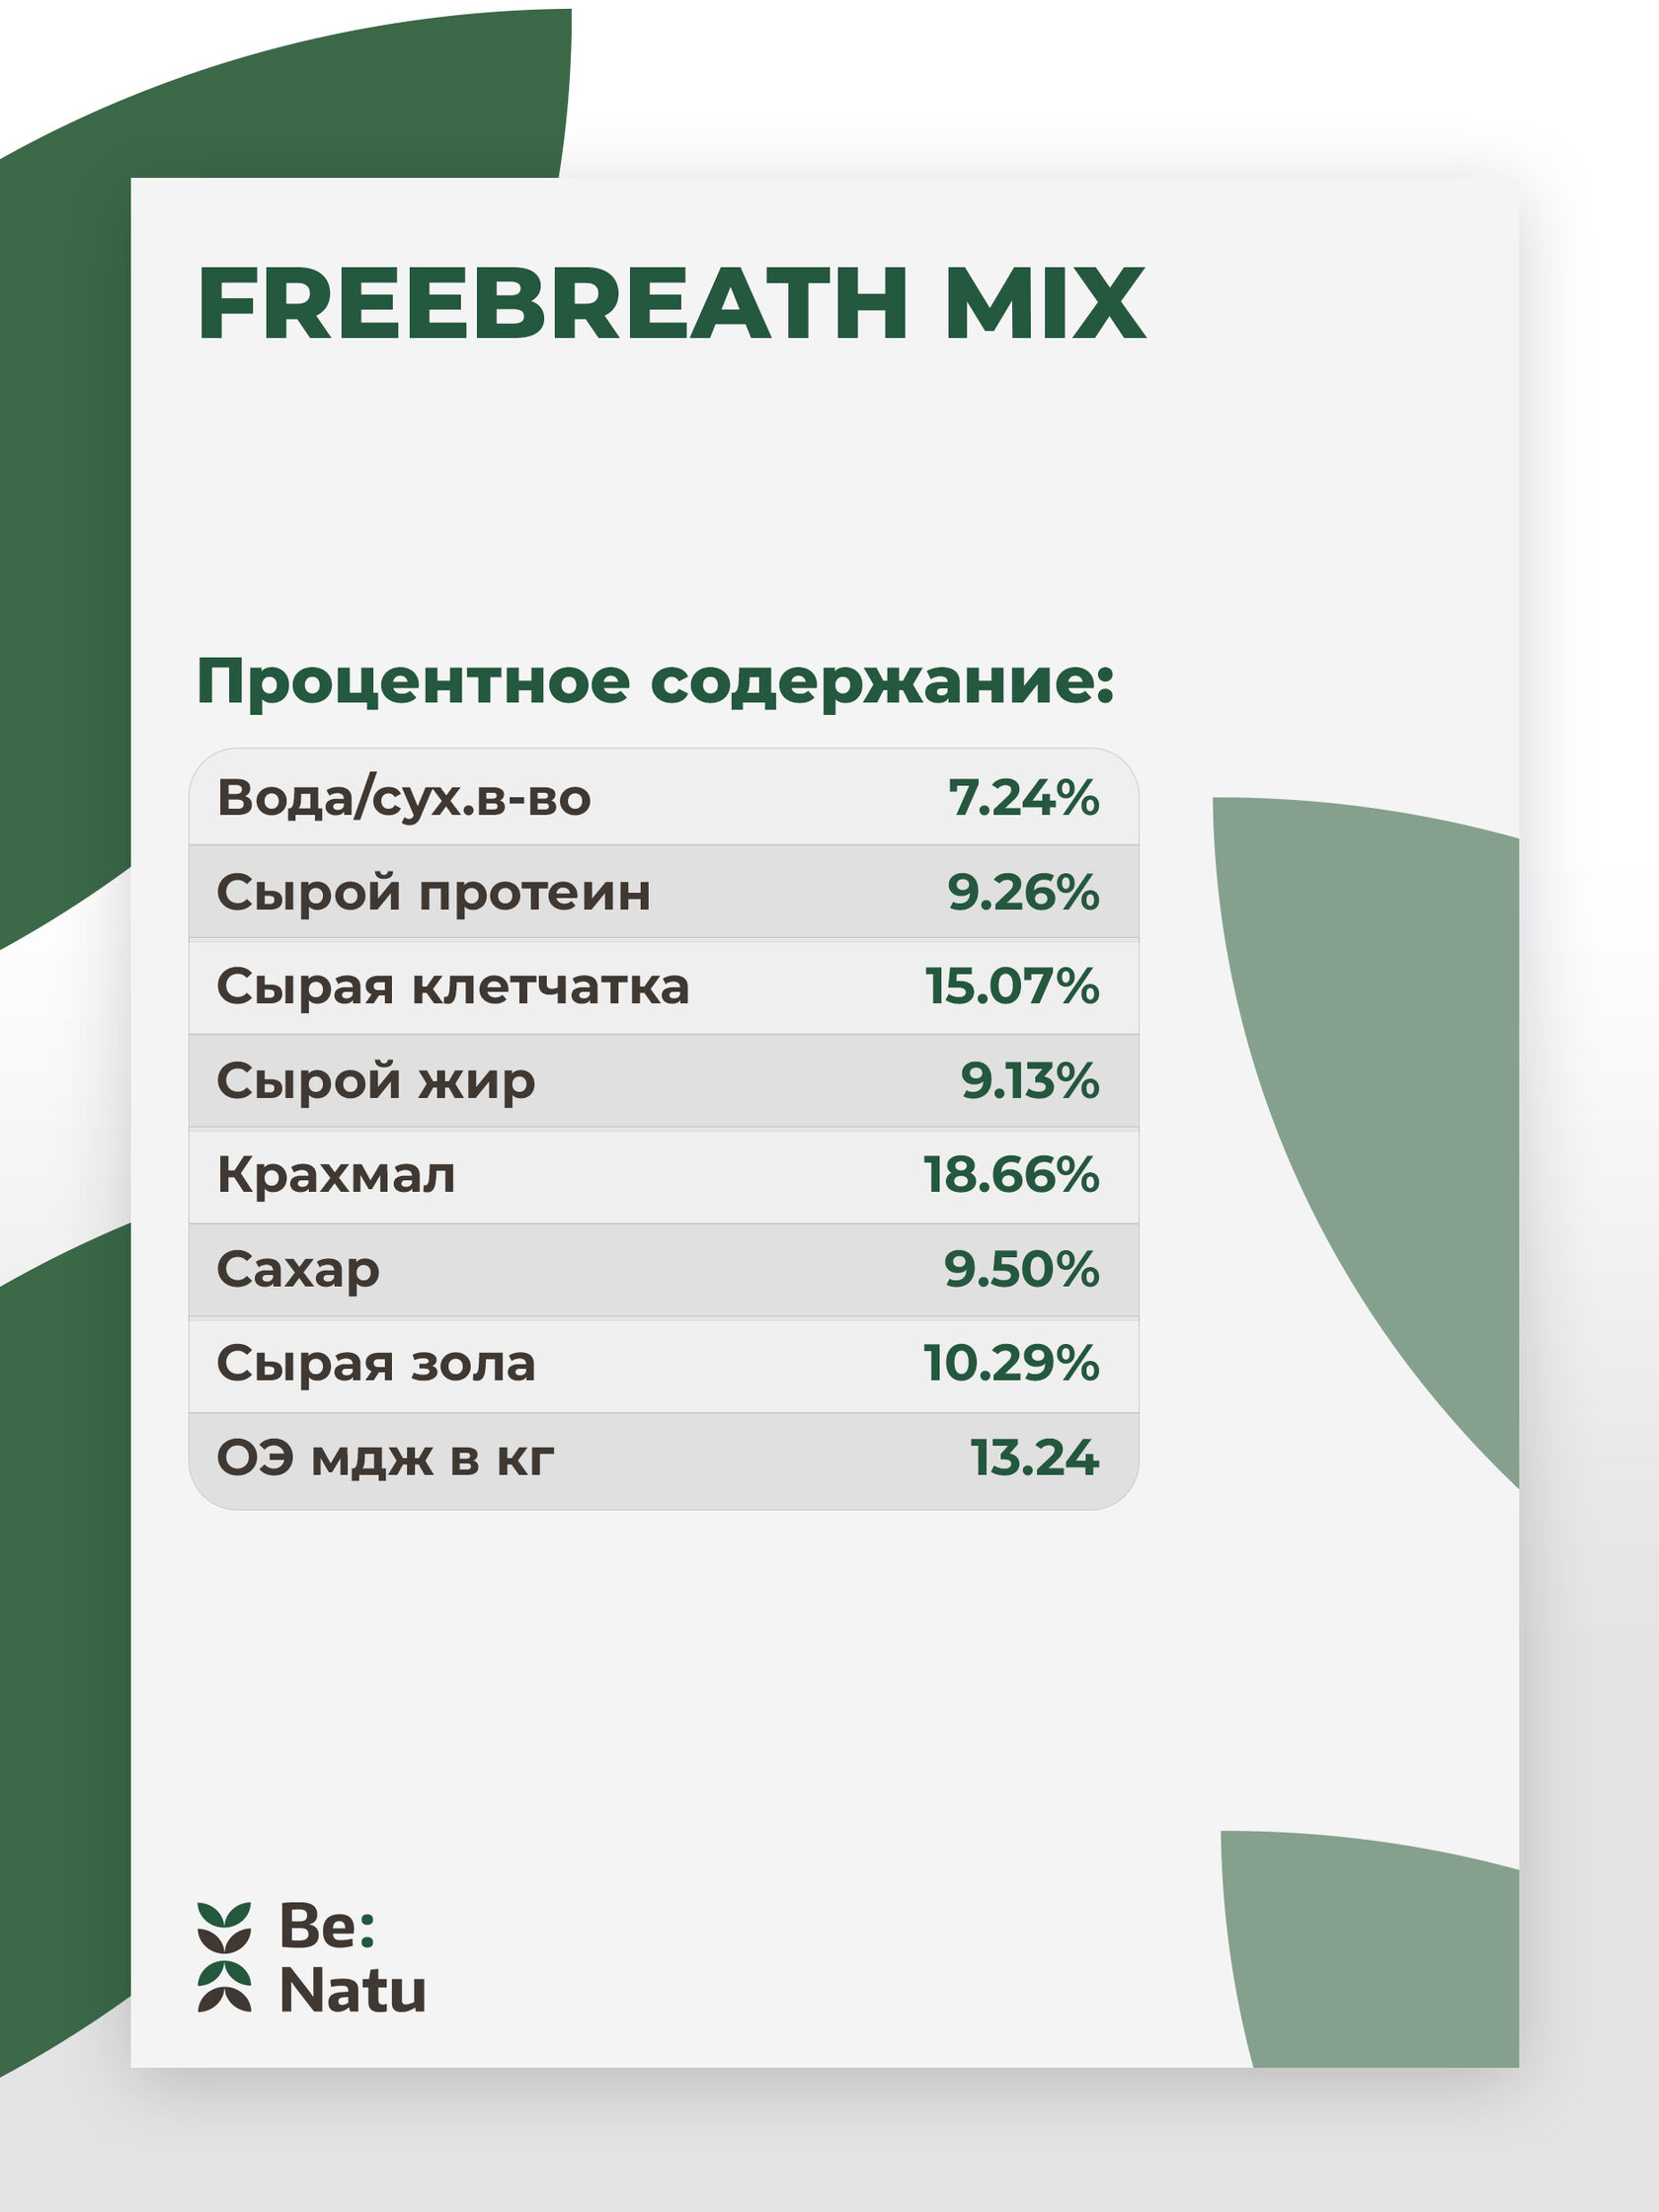   Be:Natu FreeBreath mix     20 